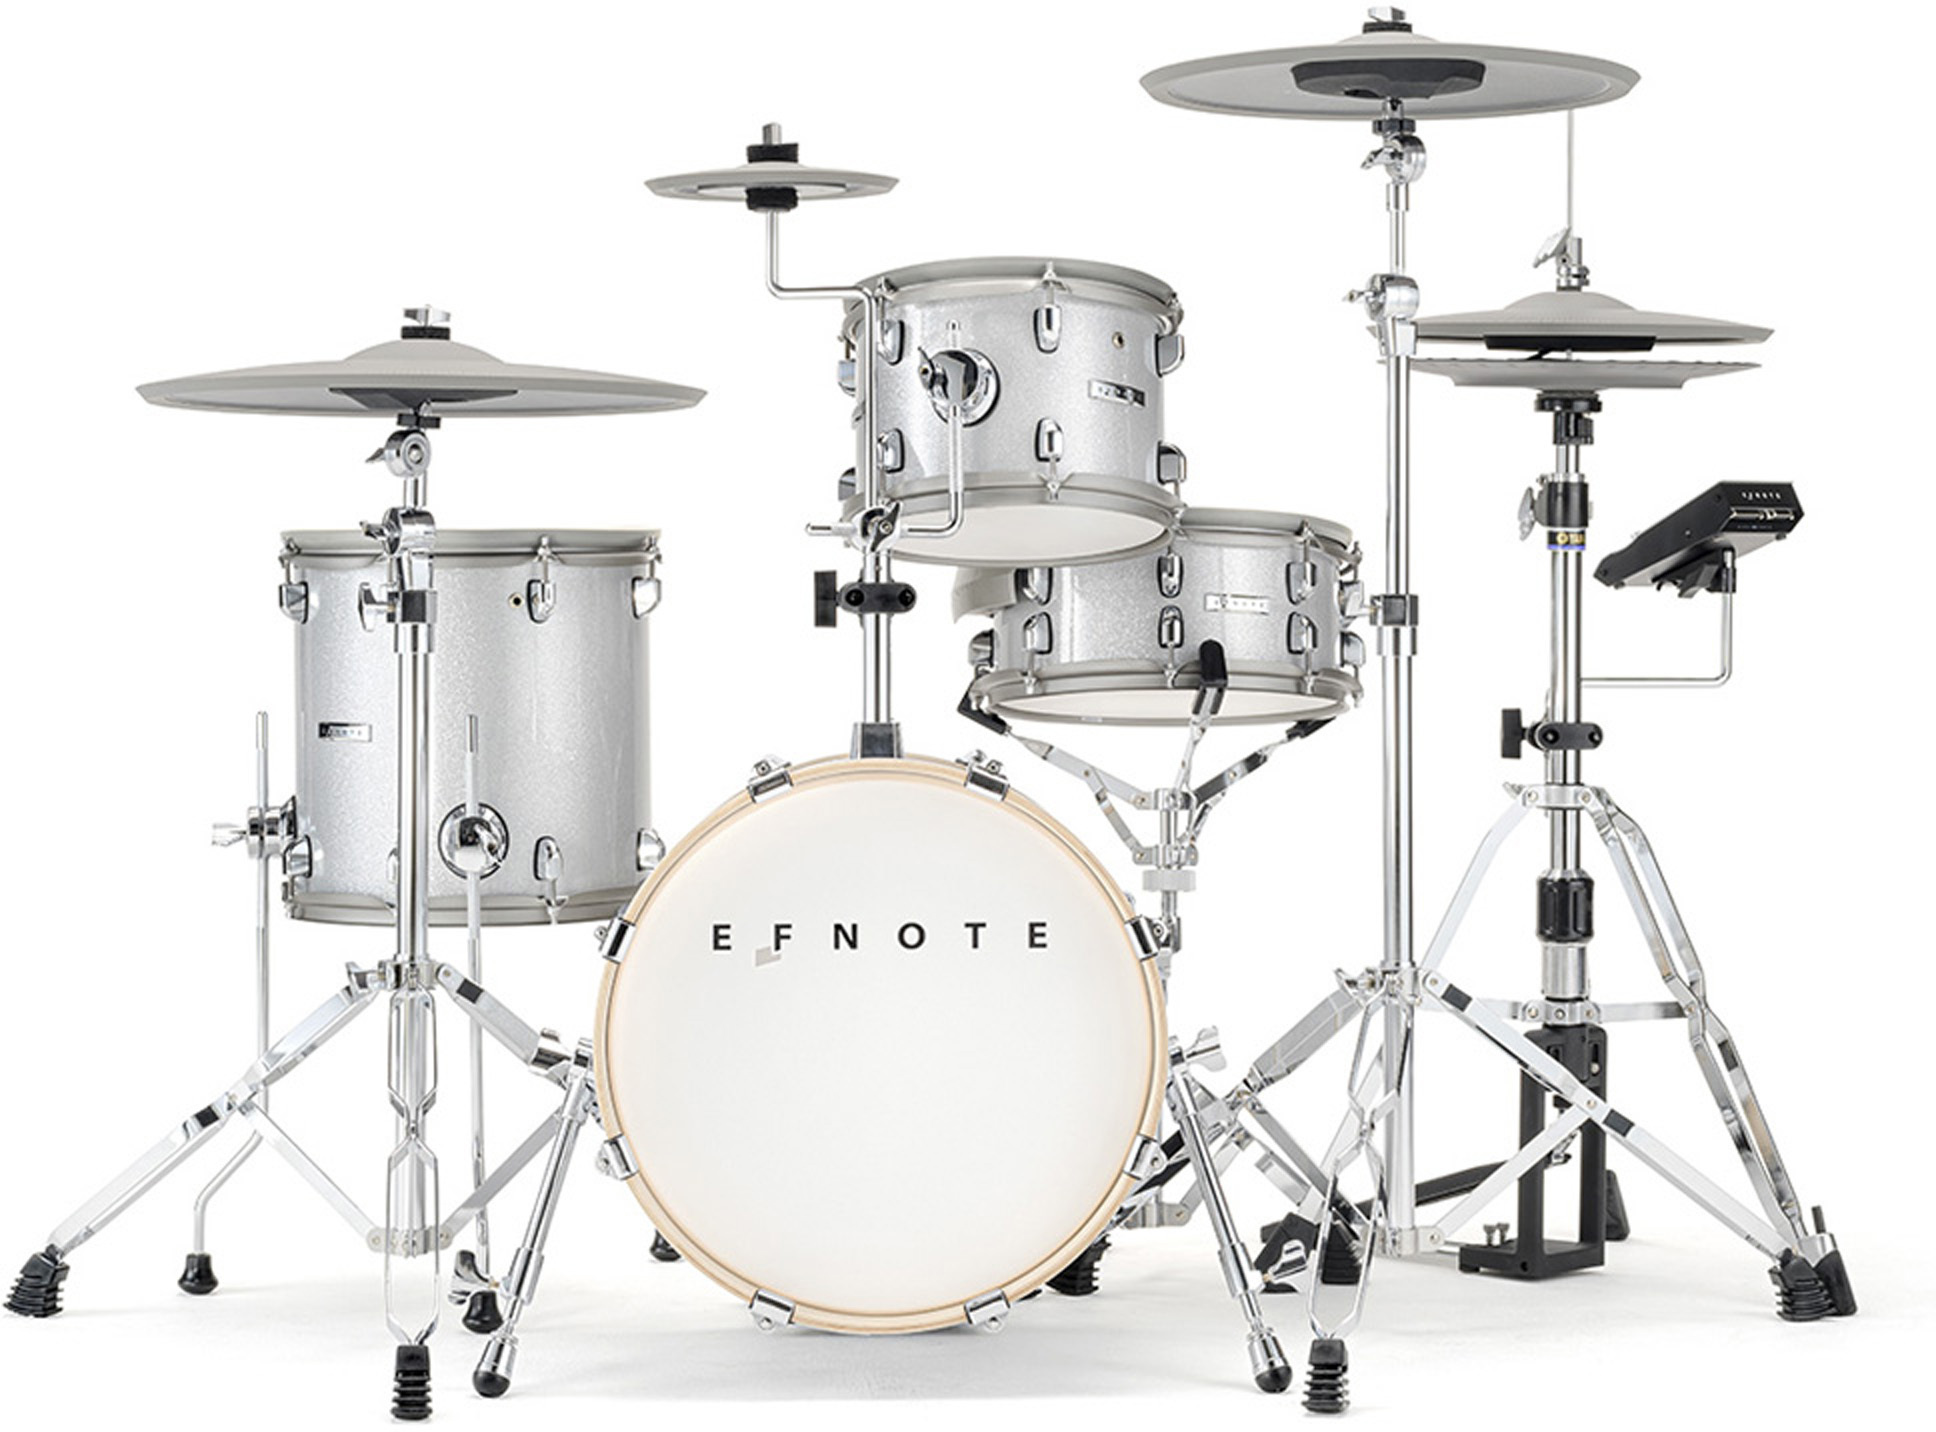 Efnote Efd5 Drum Kit - Elektronisch drumstel - Main picture